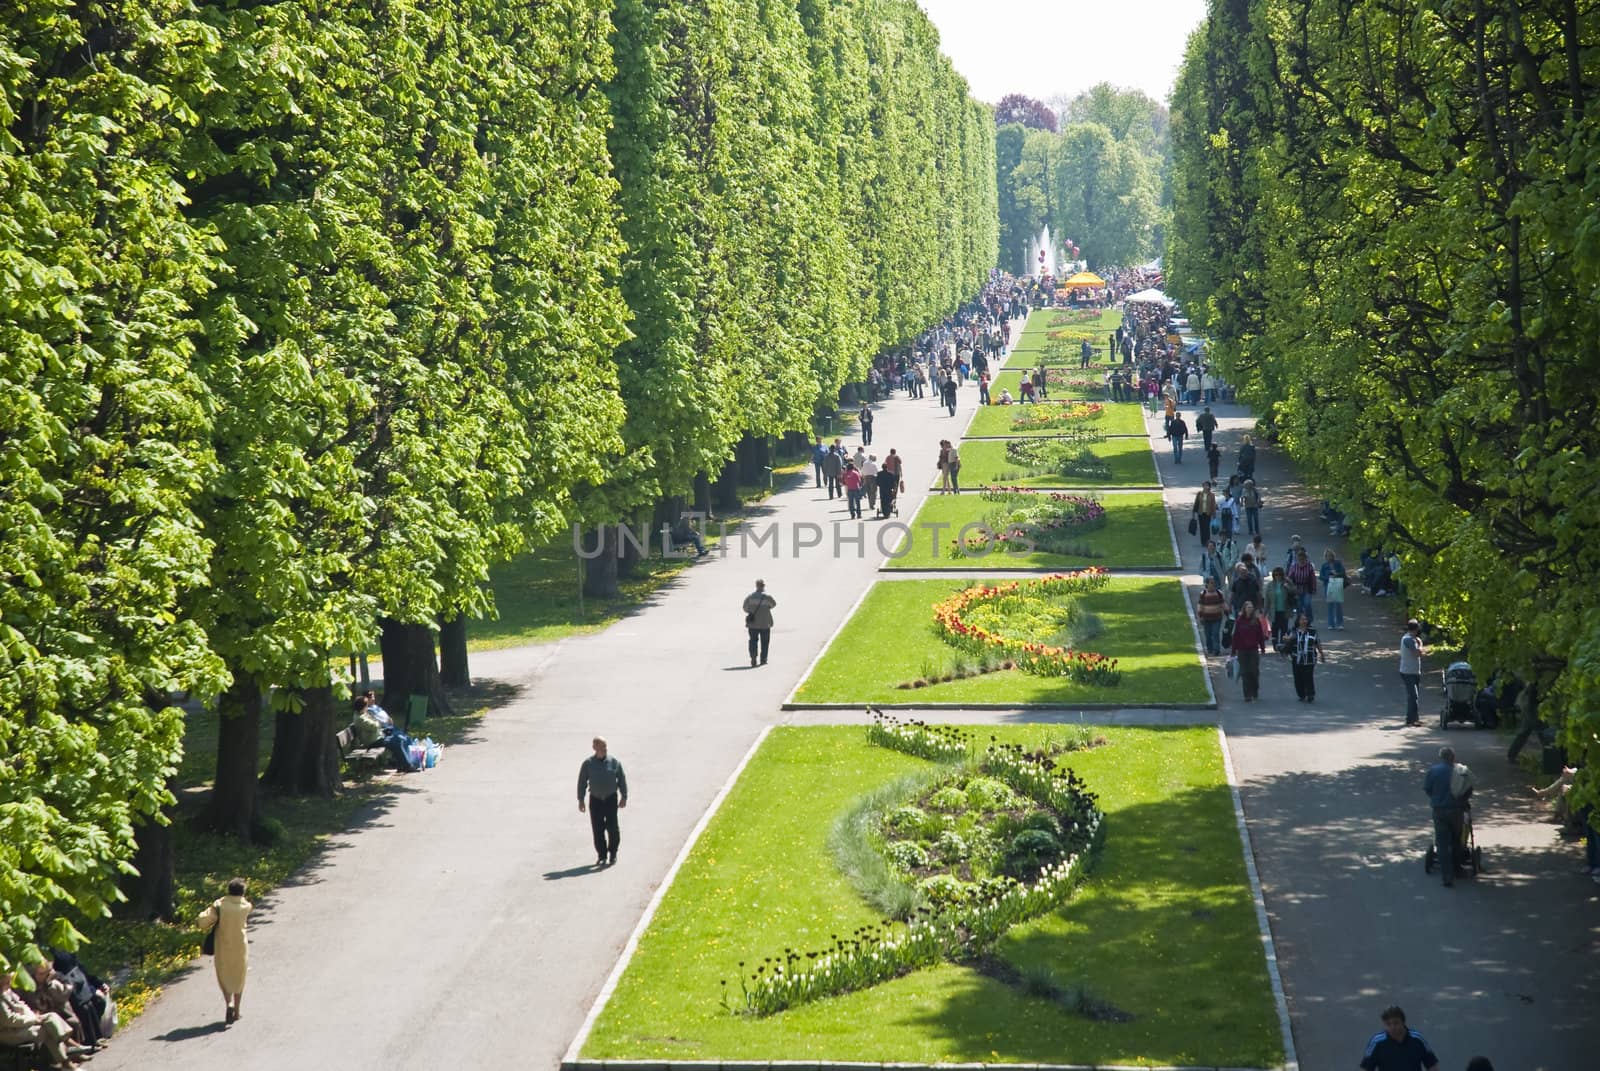 Central park in Olomouc city - Czech republic